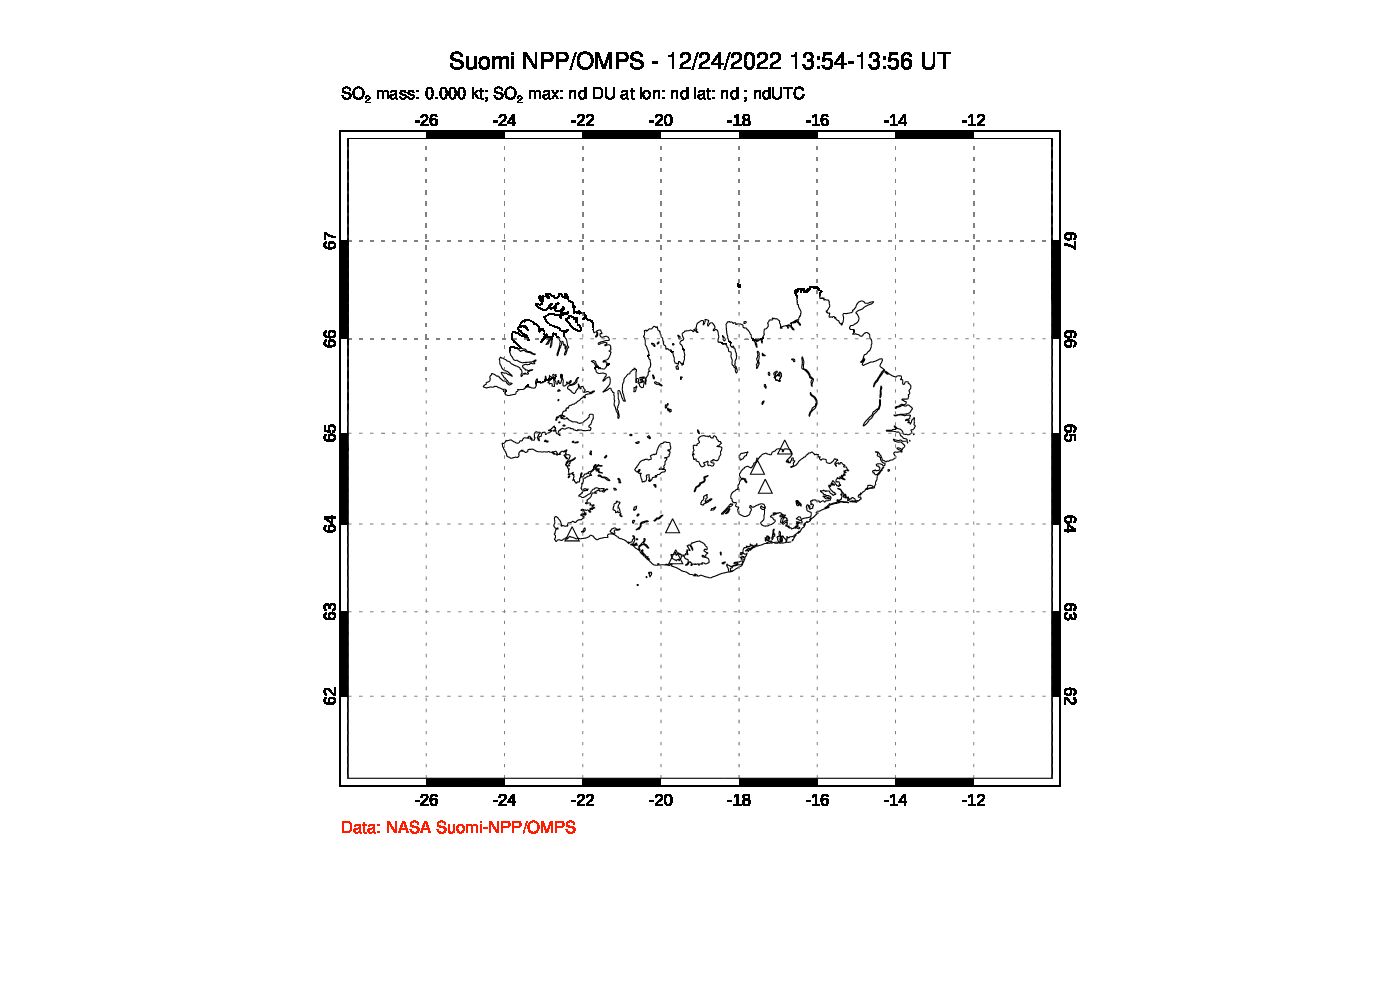 A sulfur dioxide image over Iceland on Dec 24, 2022.